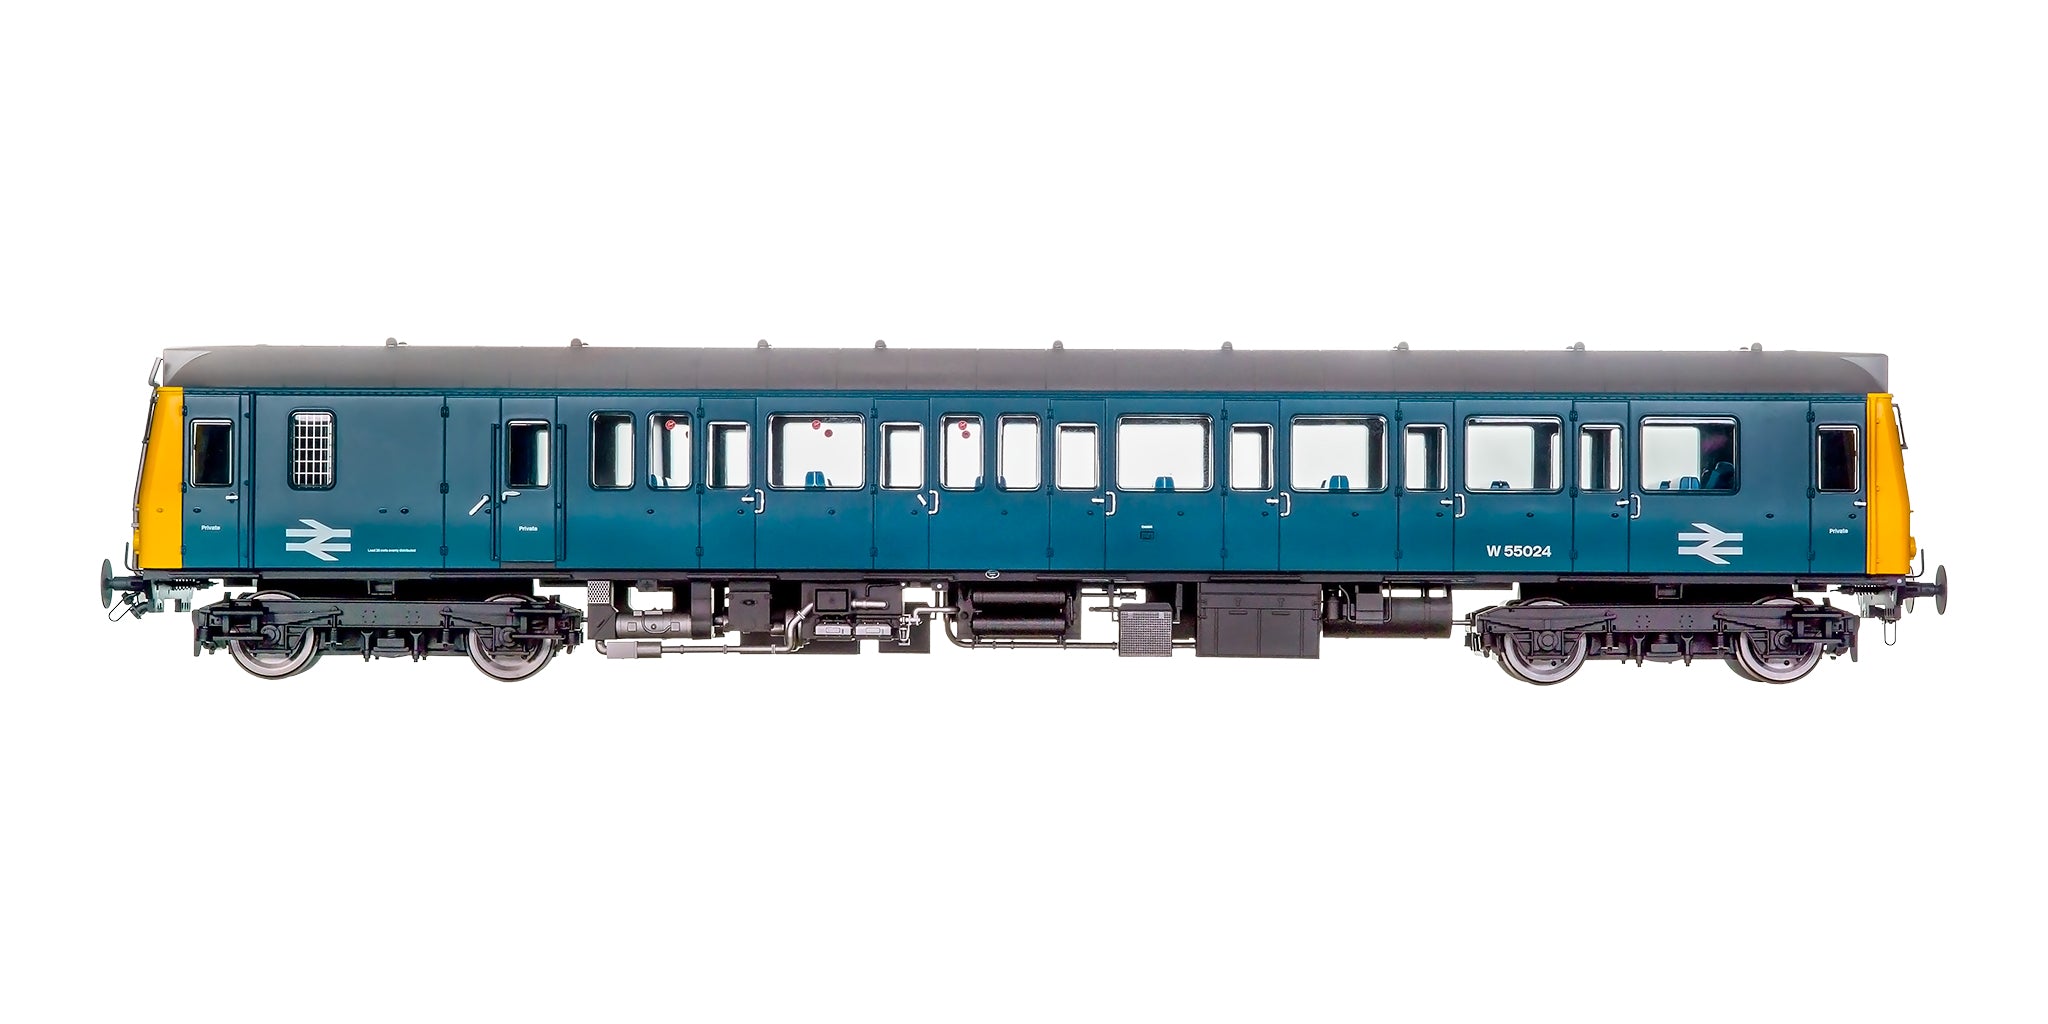 7D-009-008 O Gauge Class 121 55024 BR Blue